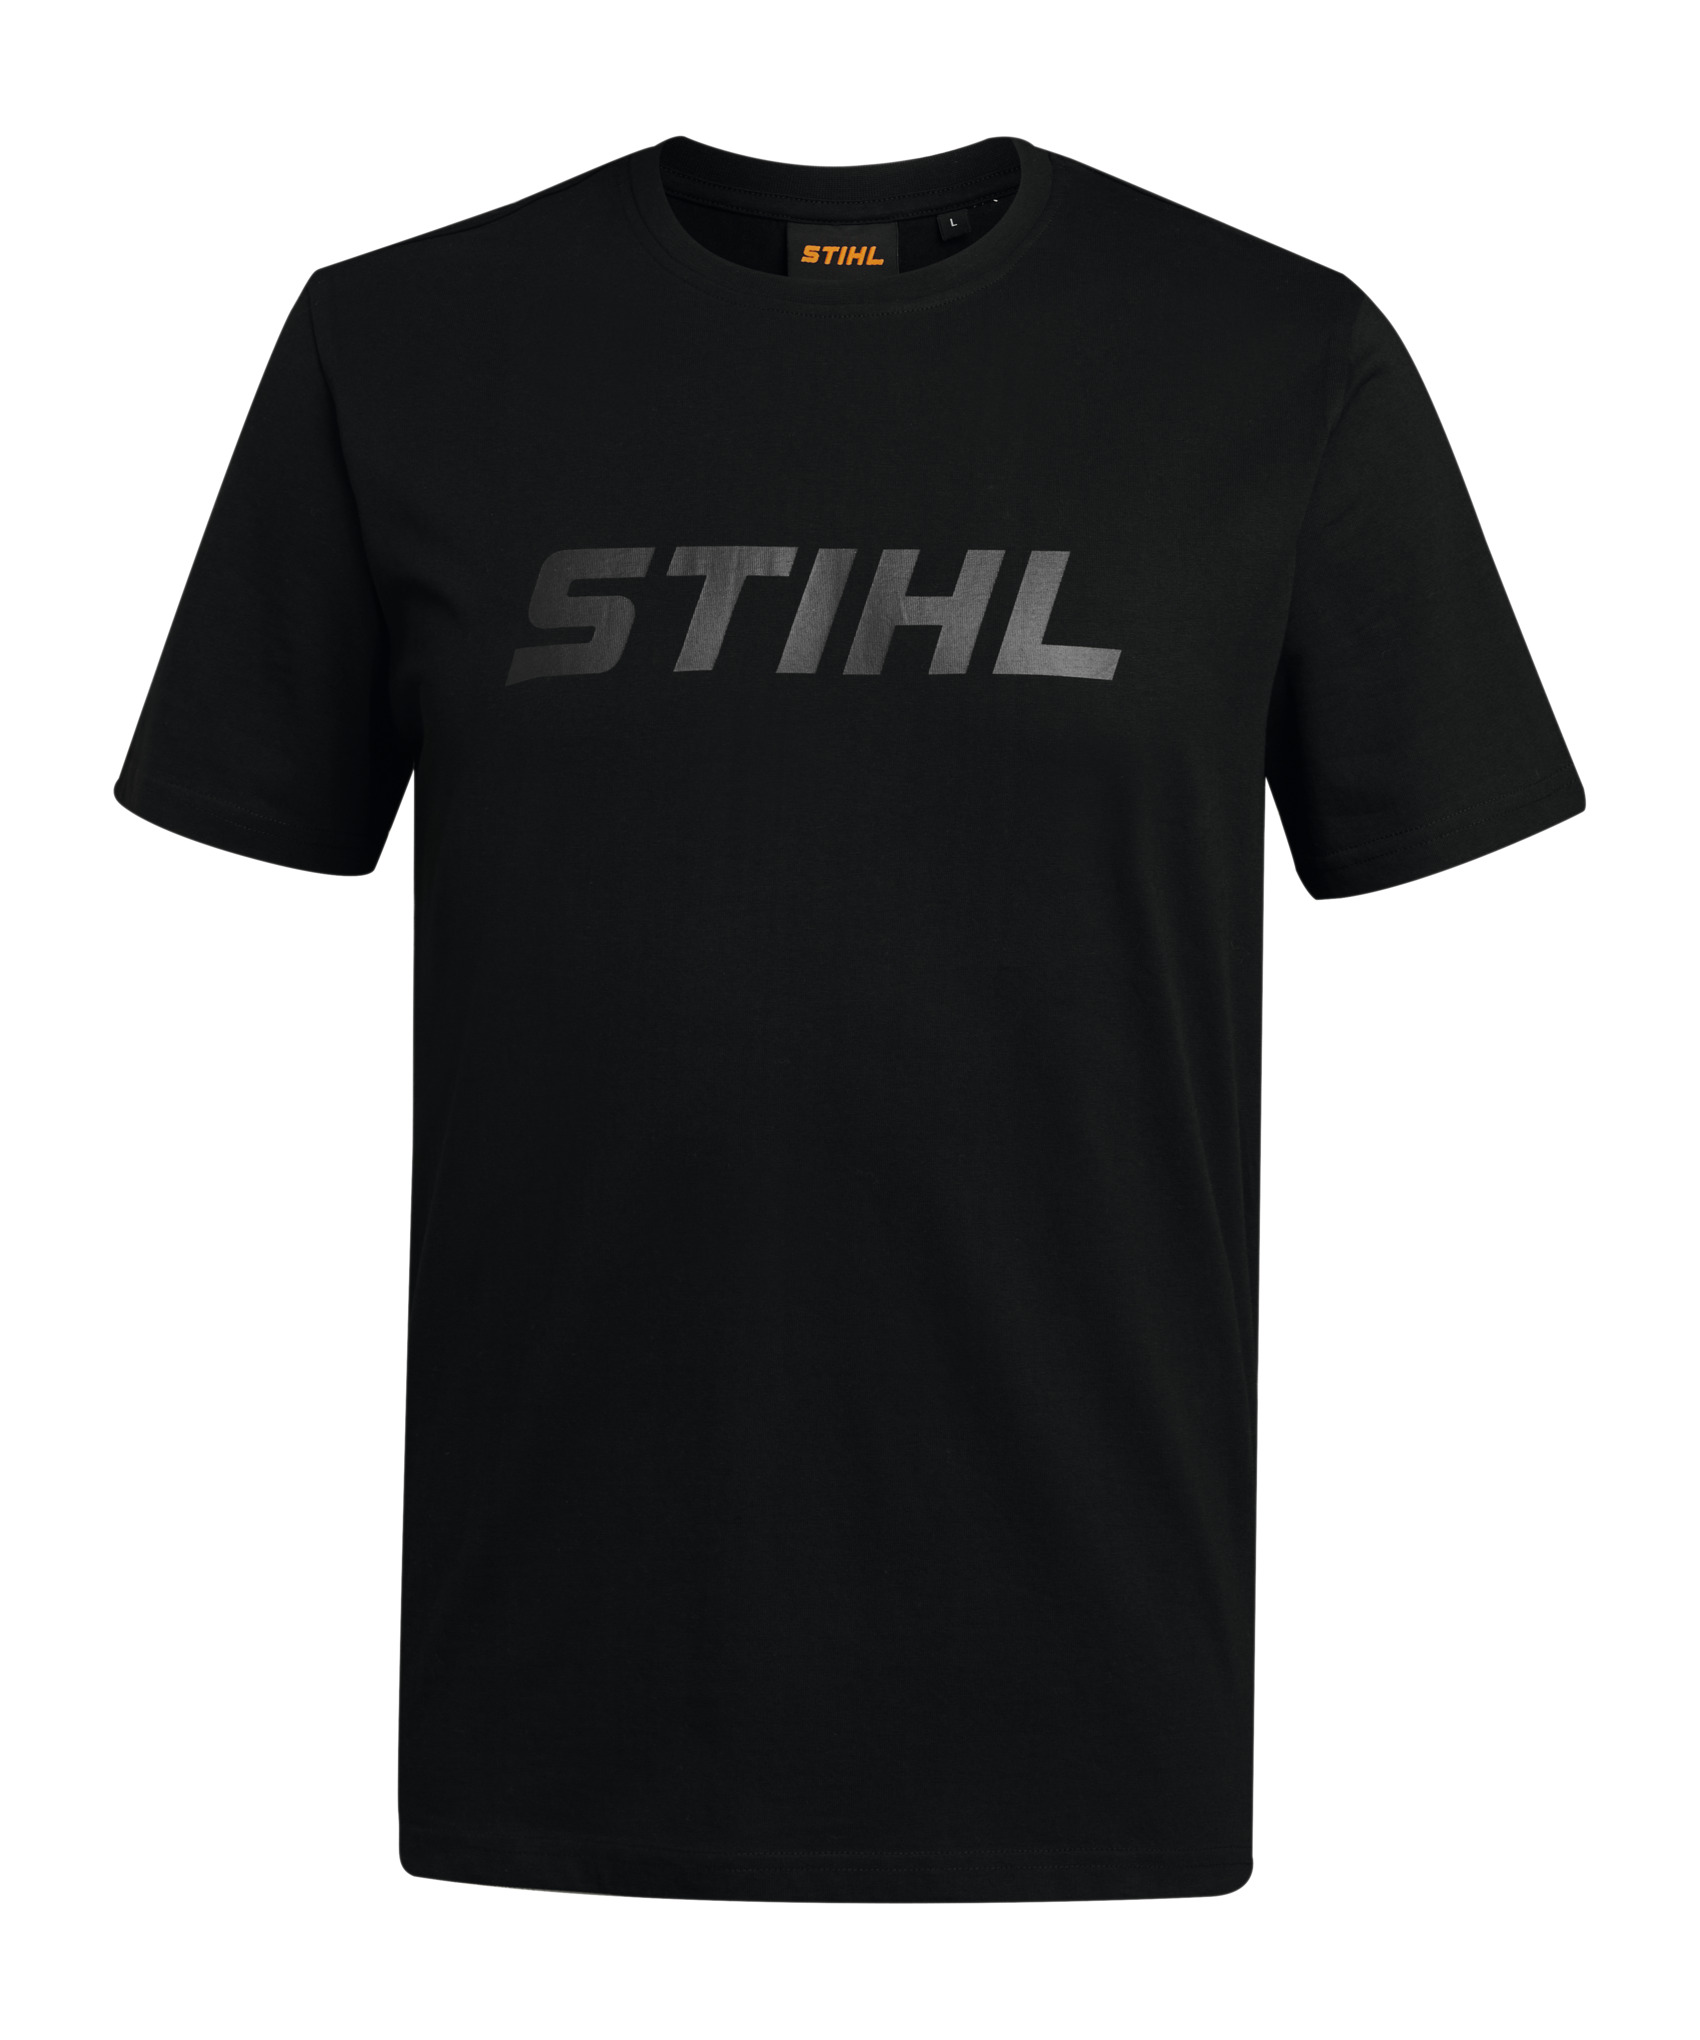 Black STIHL logo t-shirt